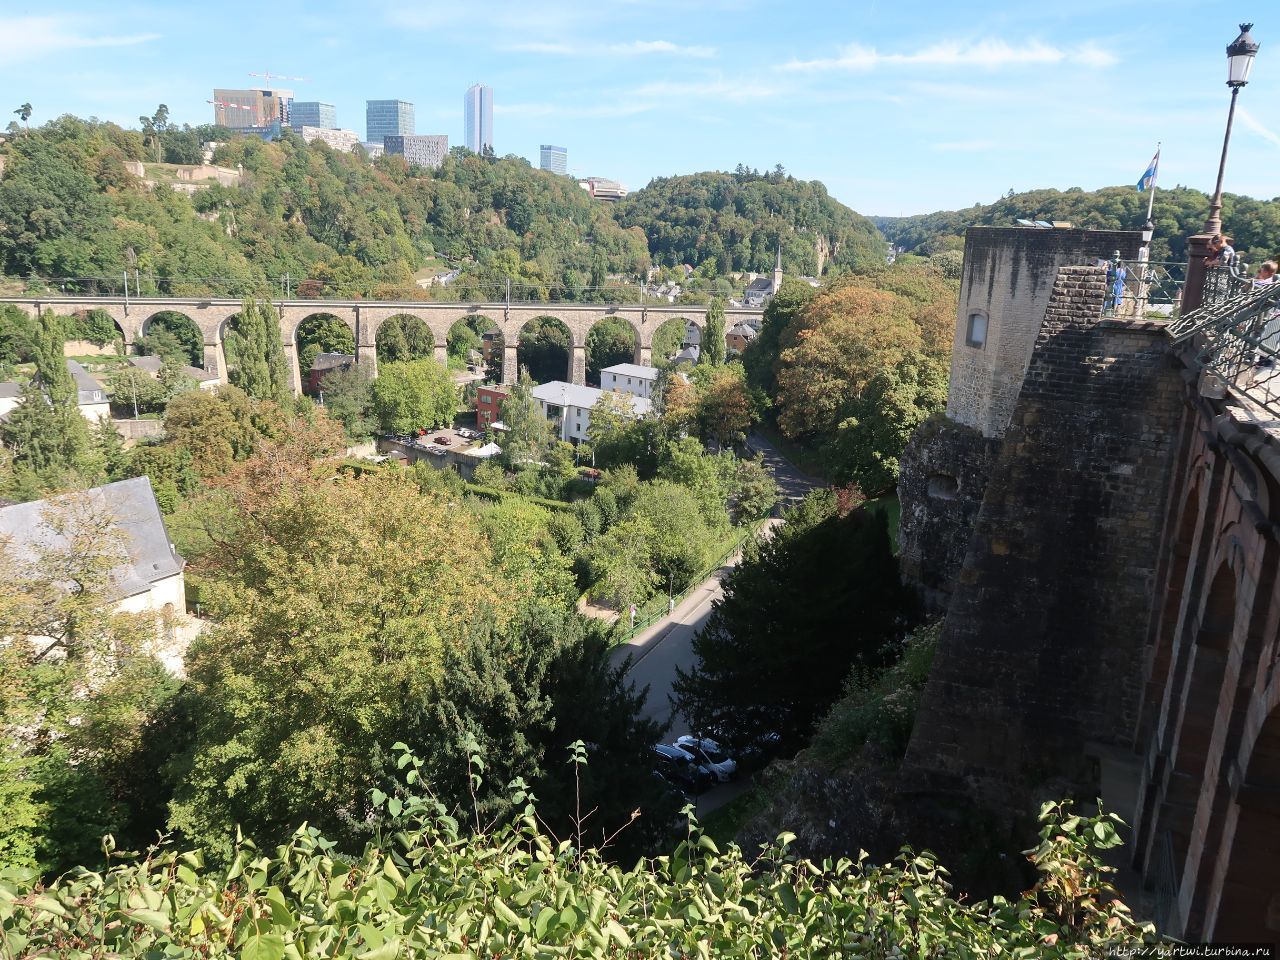 Проходим дальше, чтобы сделать фотографии с другой точки на крепость и мост (здесь порядка 111 мостов). Люксембург, Люксембург